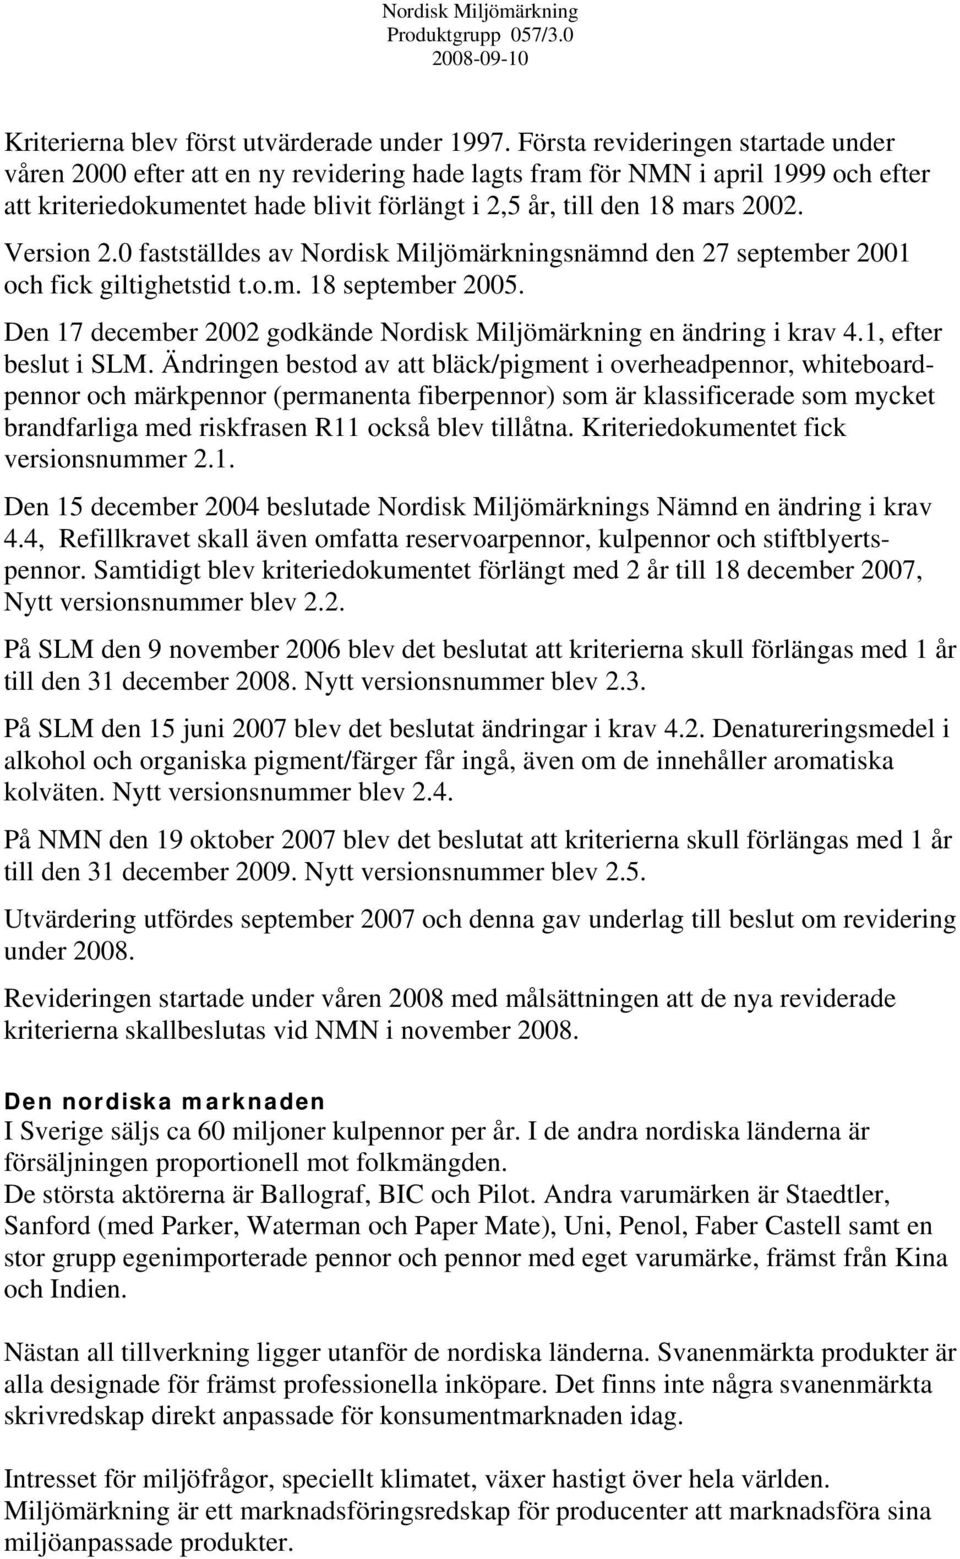 Version 2.0 fastställdes av Nordisk Miljömärkningsnämnd den 27 september 2001 och fick giltighetstid t.o.m. 18 september 2005. Den 17 december 2002 godkände Nordisk Miljömärkning en ändring i krav 4.